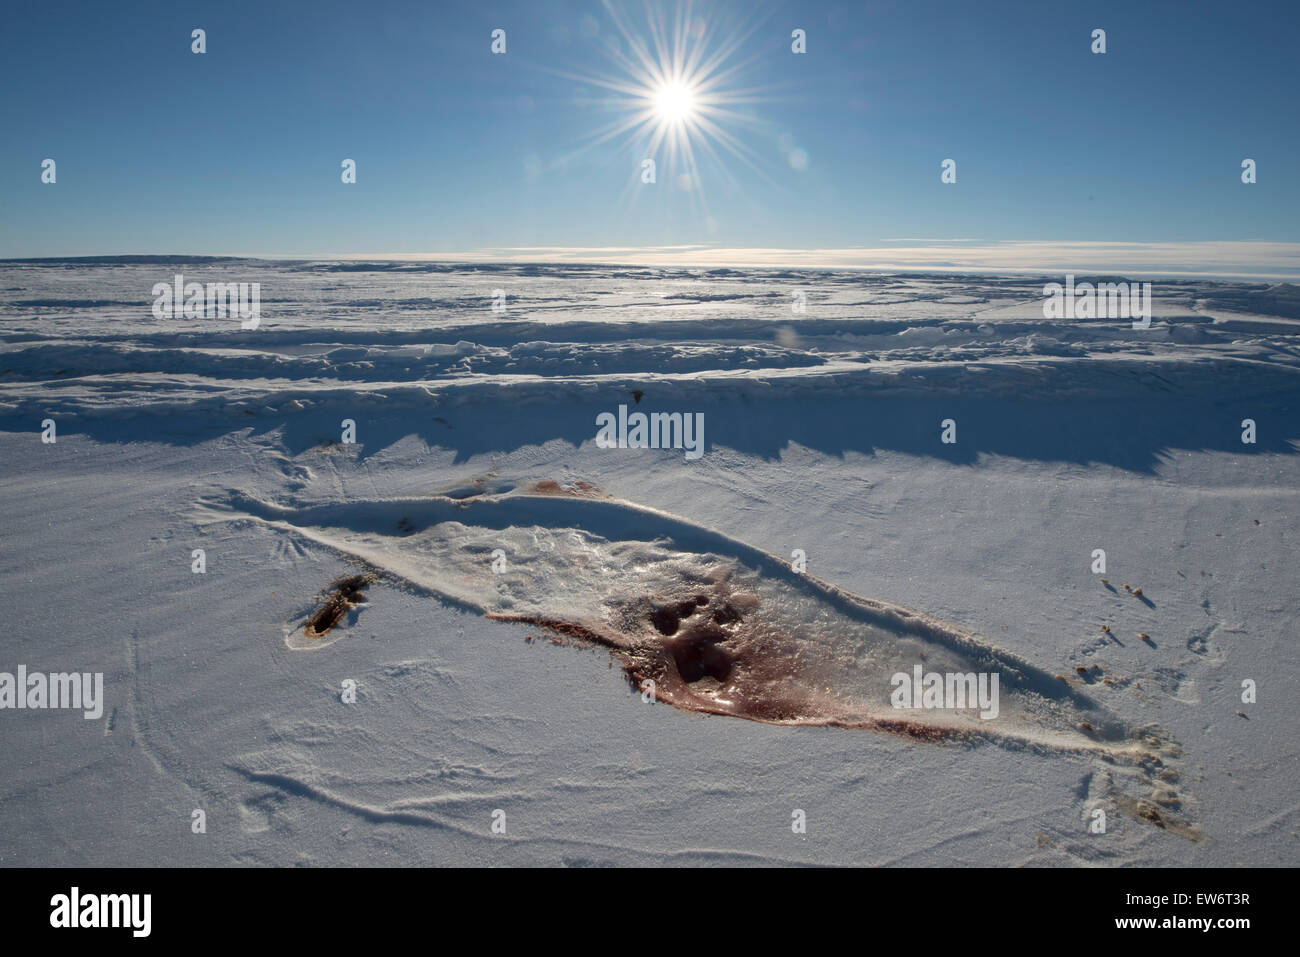 La impronta de un lesionado Weddell Seal en el hielo del mar, a punto de mármol, en la Antártida. Foto de stock